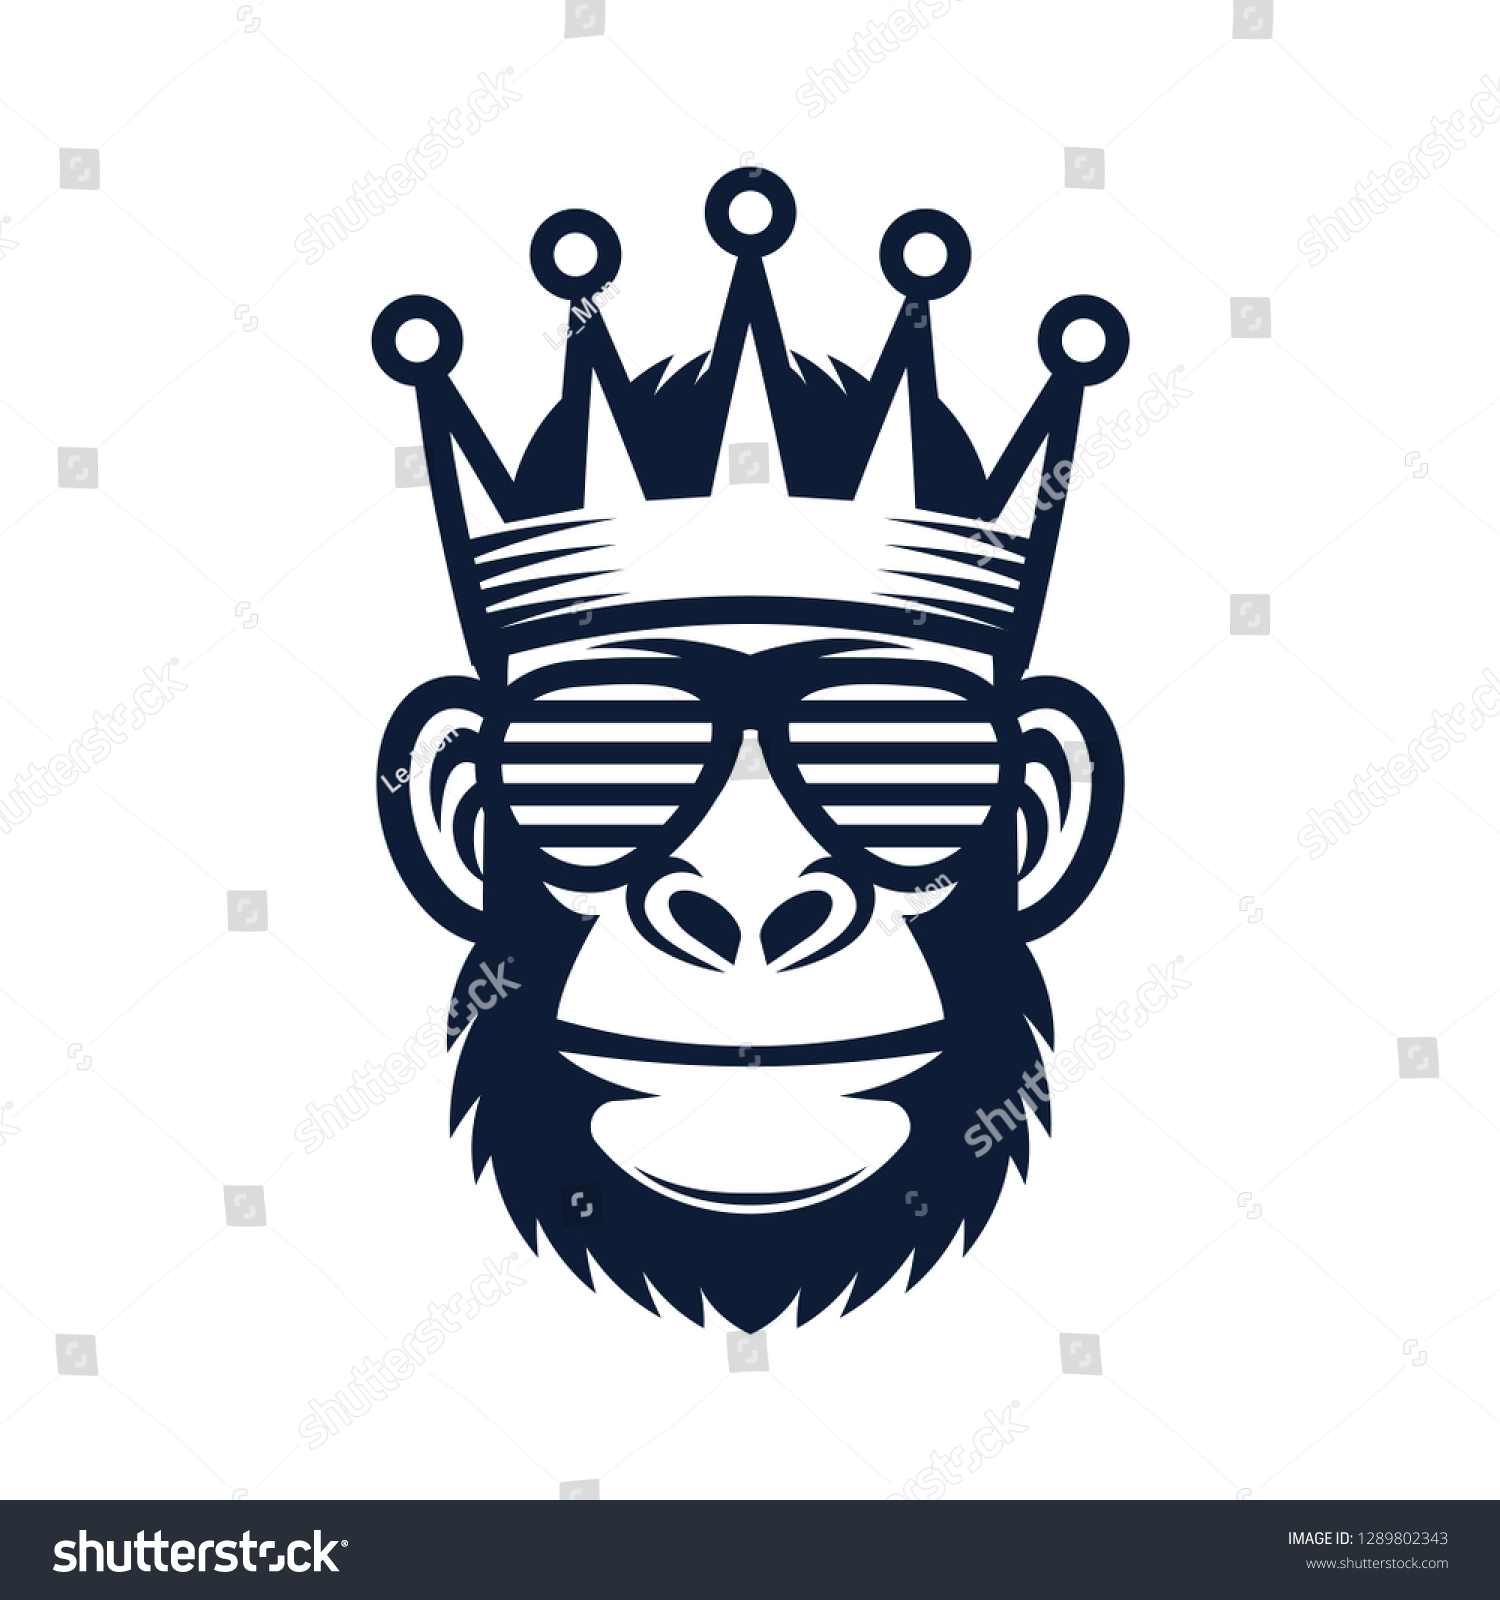 サングラスと王冠をかっこいい猿 キングゴリラのロゴ のベクター画像素材 ロイヤリティフリー